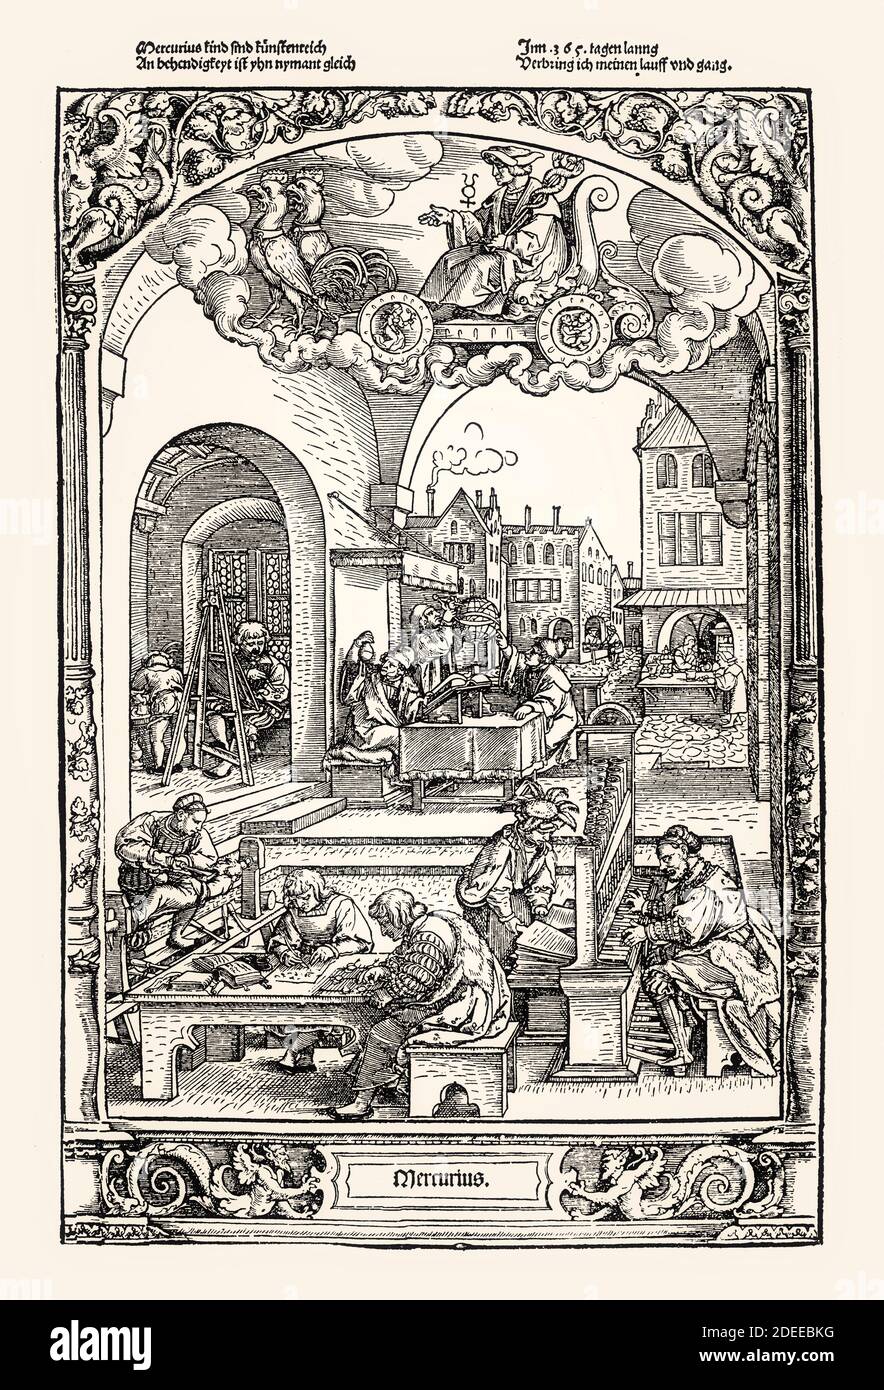 Hans Sebald Beham, Mercurius, i sette dei planetari e i loro figli, 1531, restaurati digitalmente Foto Stock